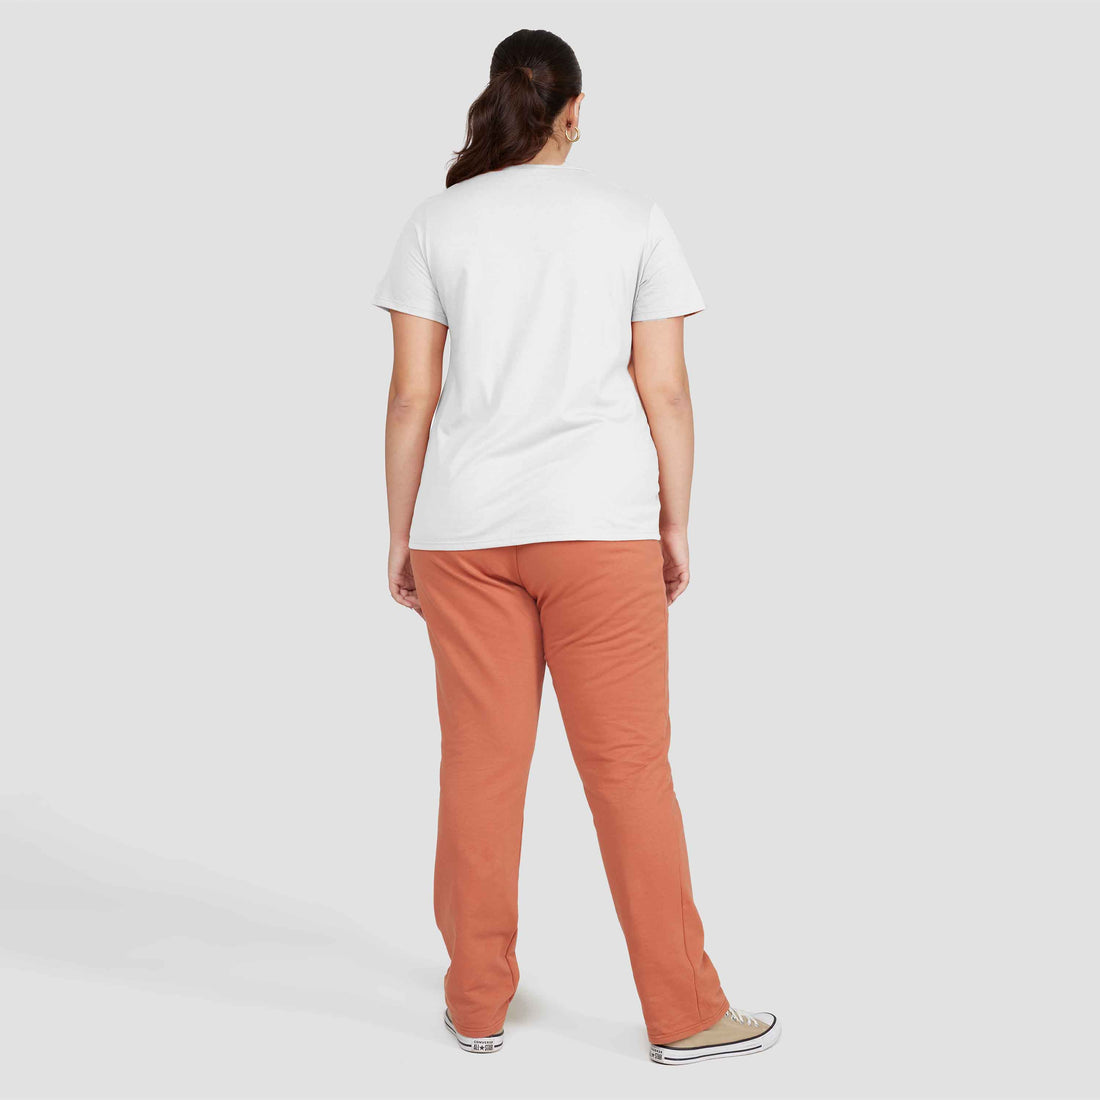 Tech T-Shirt Modal Gola V Plus Feminina - Branco